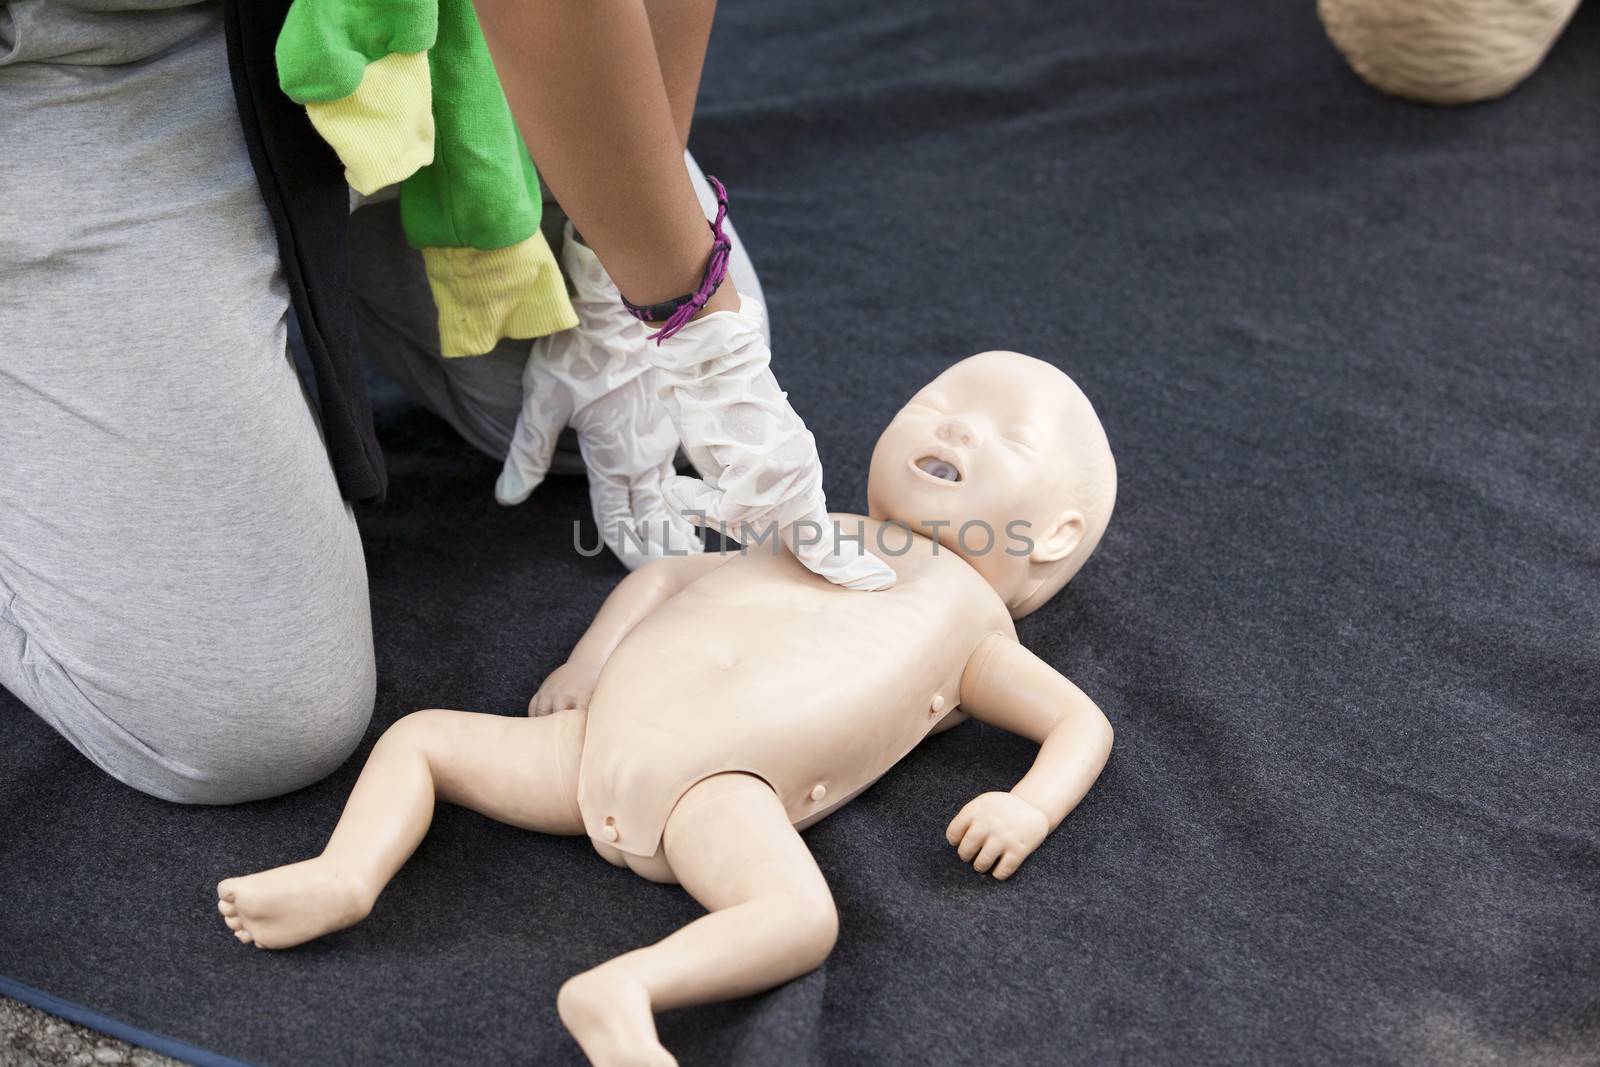 Infant dummy cardiac massage by wellphoto